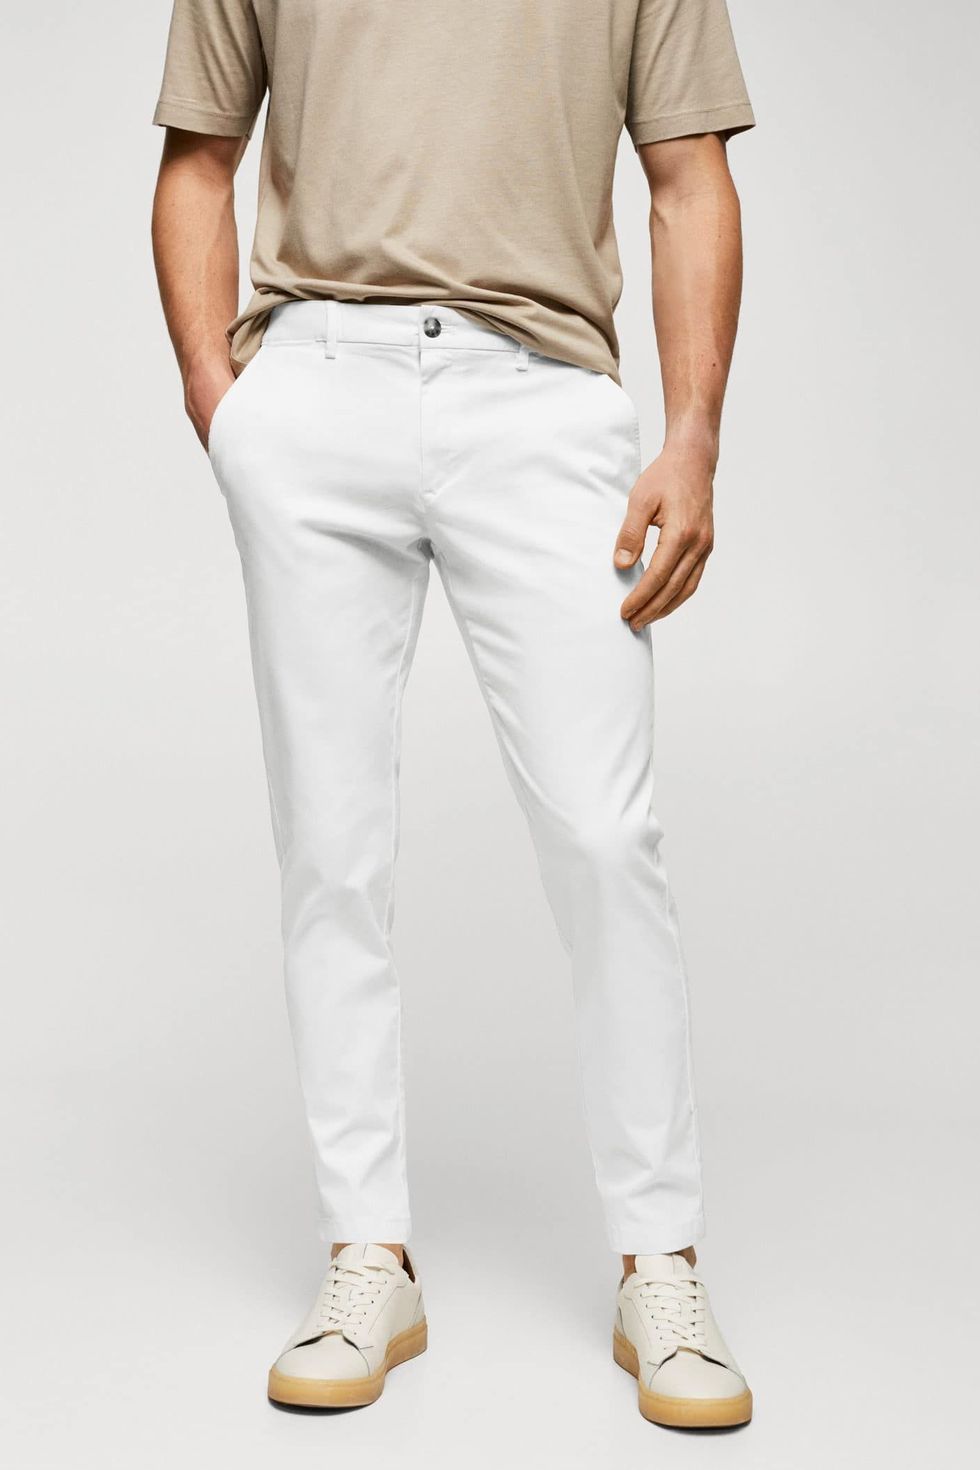 Pantalones blancos para hombre: guía para llevarlos en verano